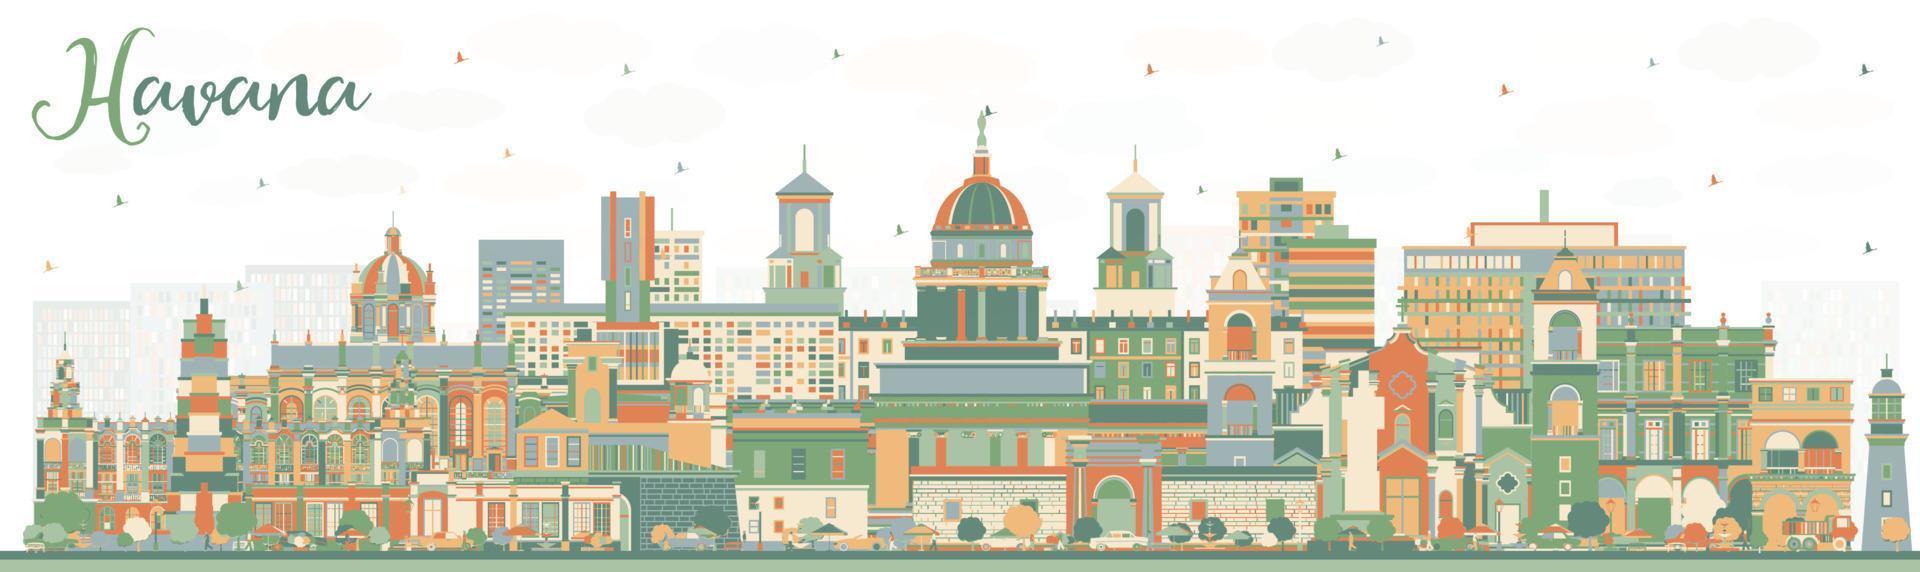 Havana Cuba City Skyline with Color Buildings. vector